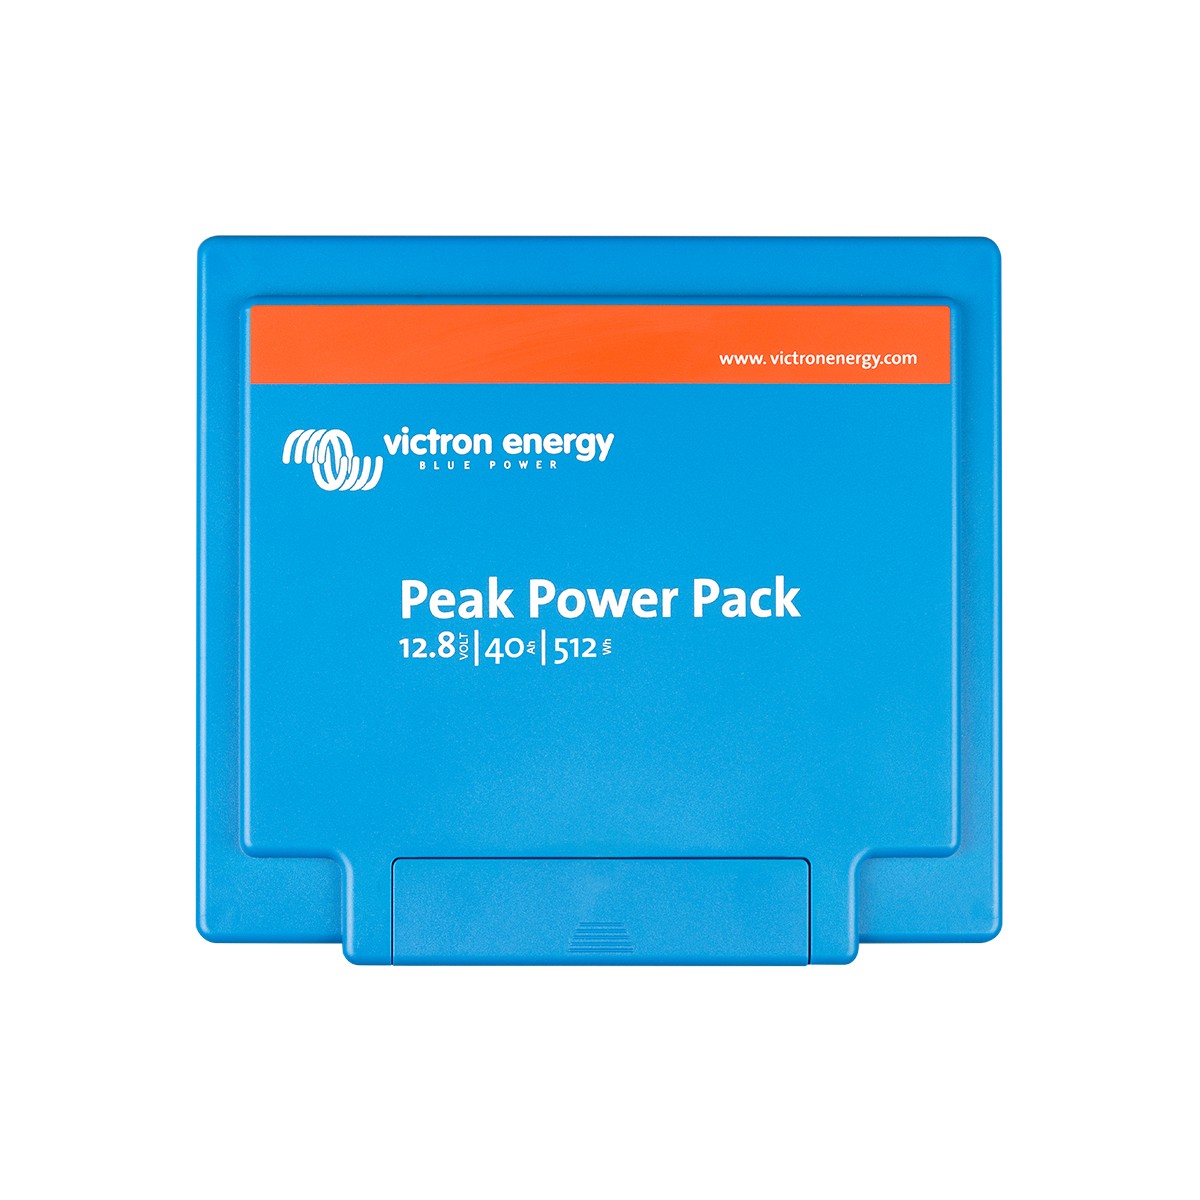 Akku Peak Power Pack 12.8 V/40 Ah-512 Wh Victron Energy